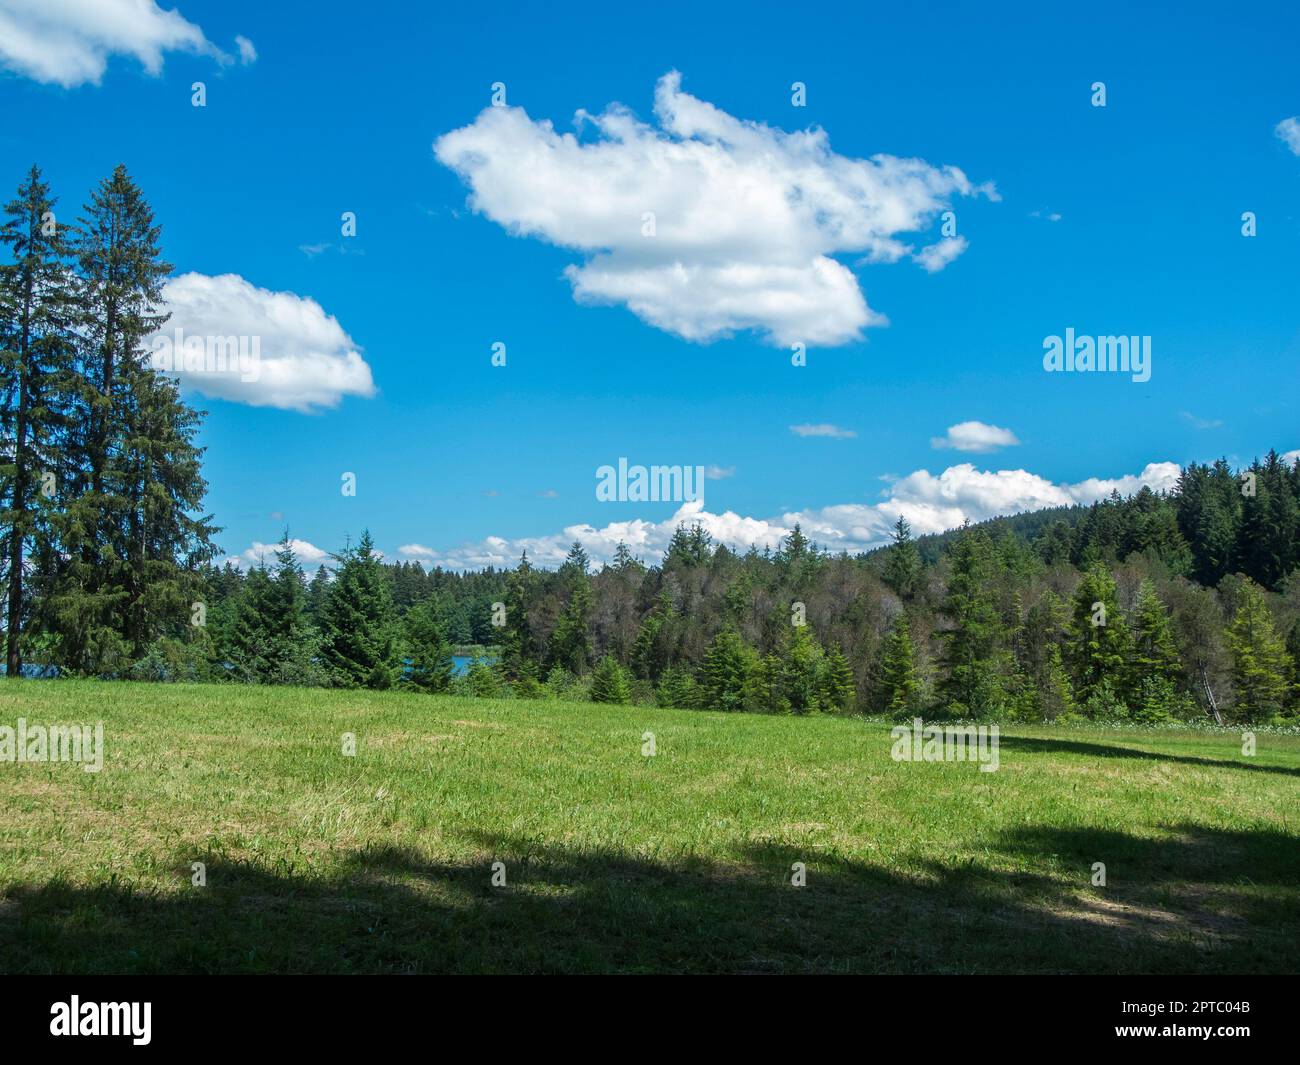 Landschaftsansicht in Bayern mit Gras im Vordergrund Wald und Weiher im Hintergrund vor blauen Himmel mit kleinen weißen wolken im Sommer. Stock Photo